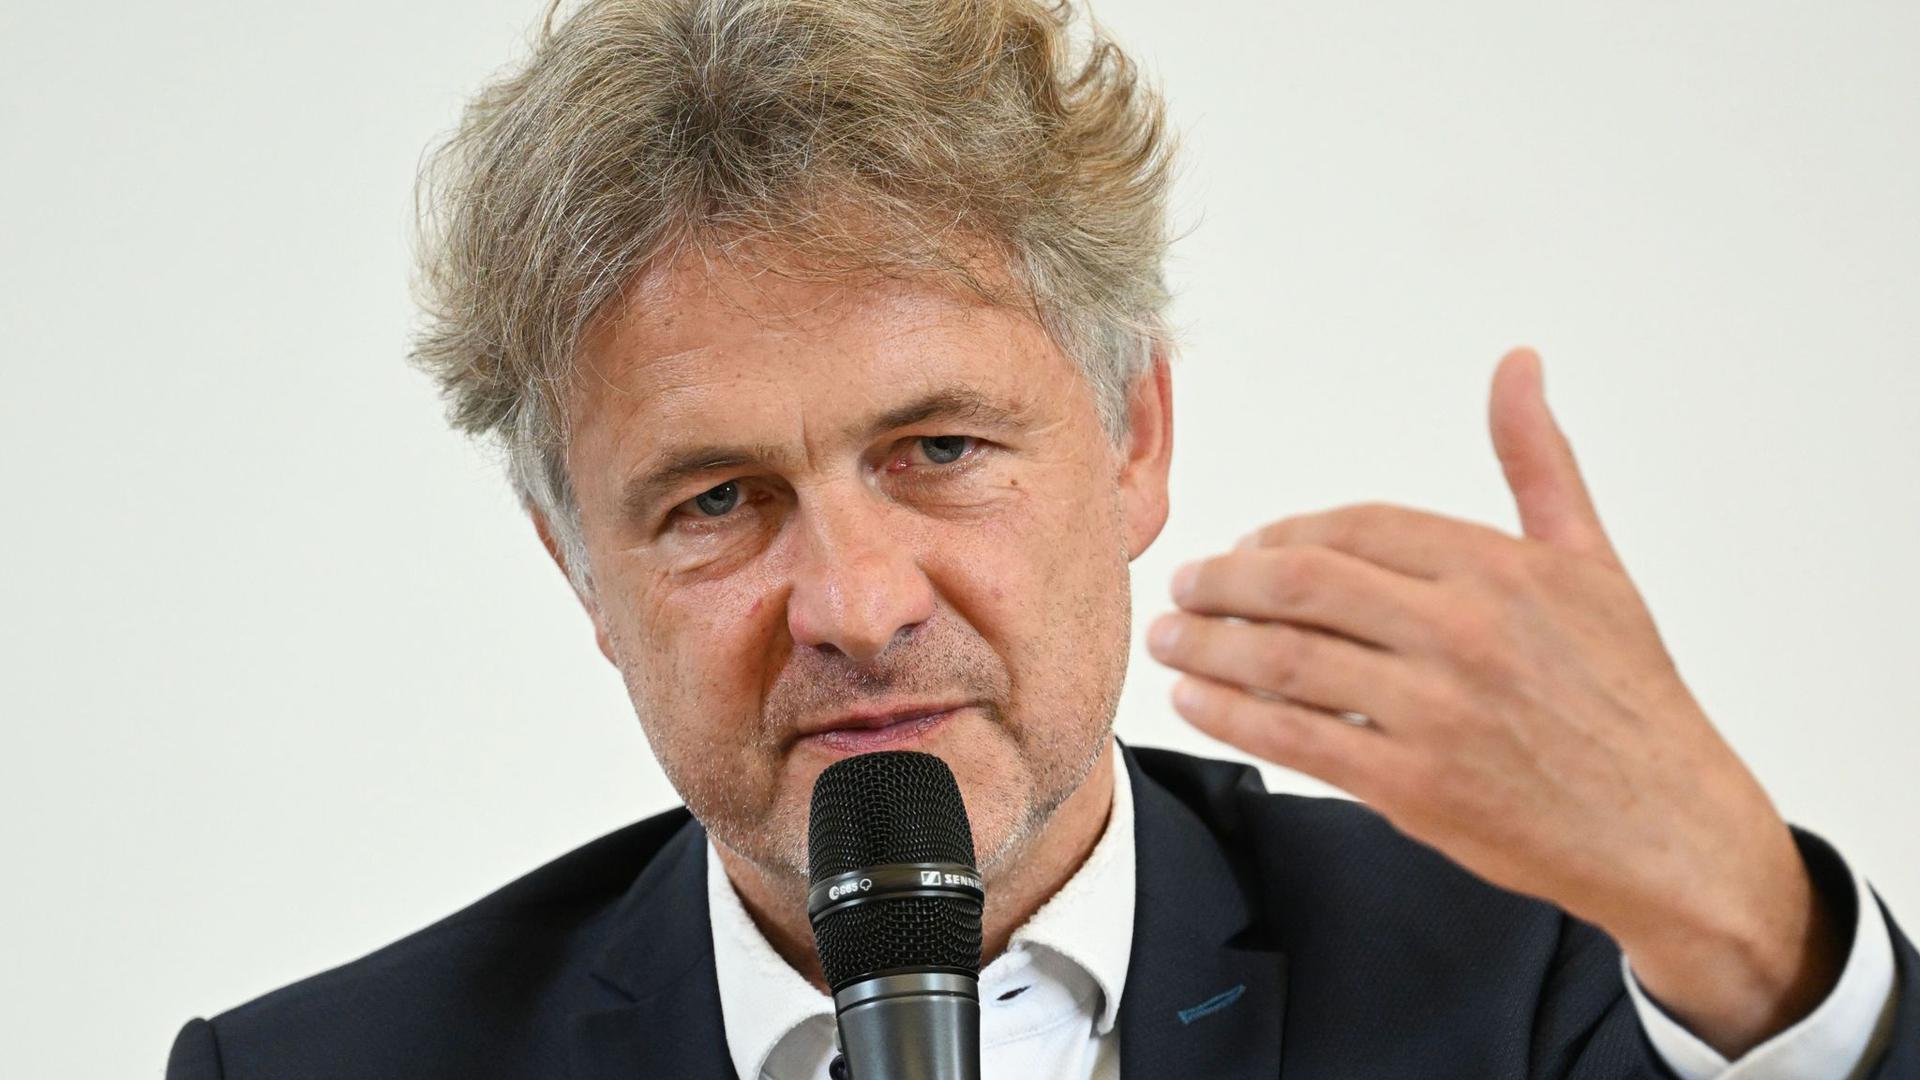 Oberbürgermeister von Karlsruhe Frank Mentrup beantwortet während einer Pressekonferenz Fragen von Journalisten.